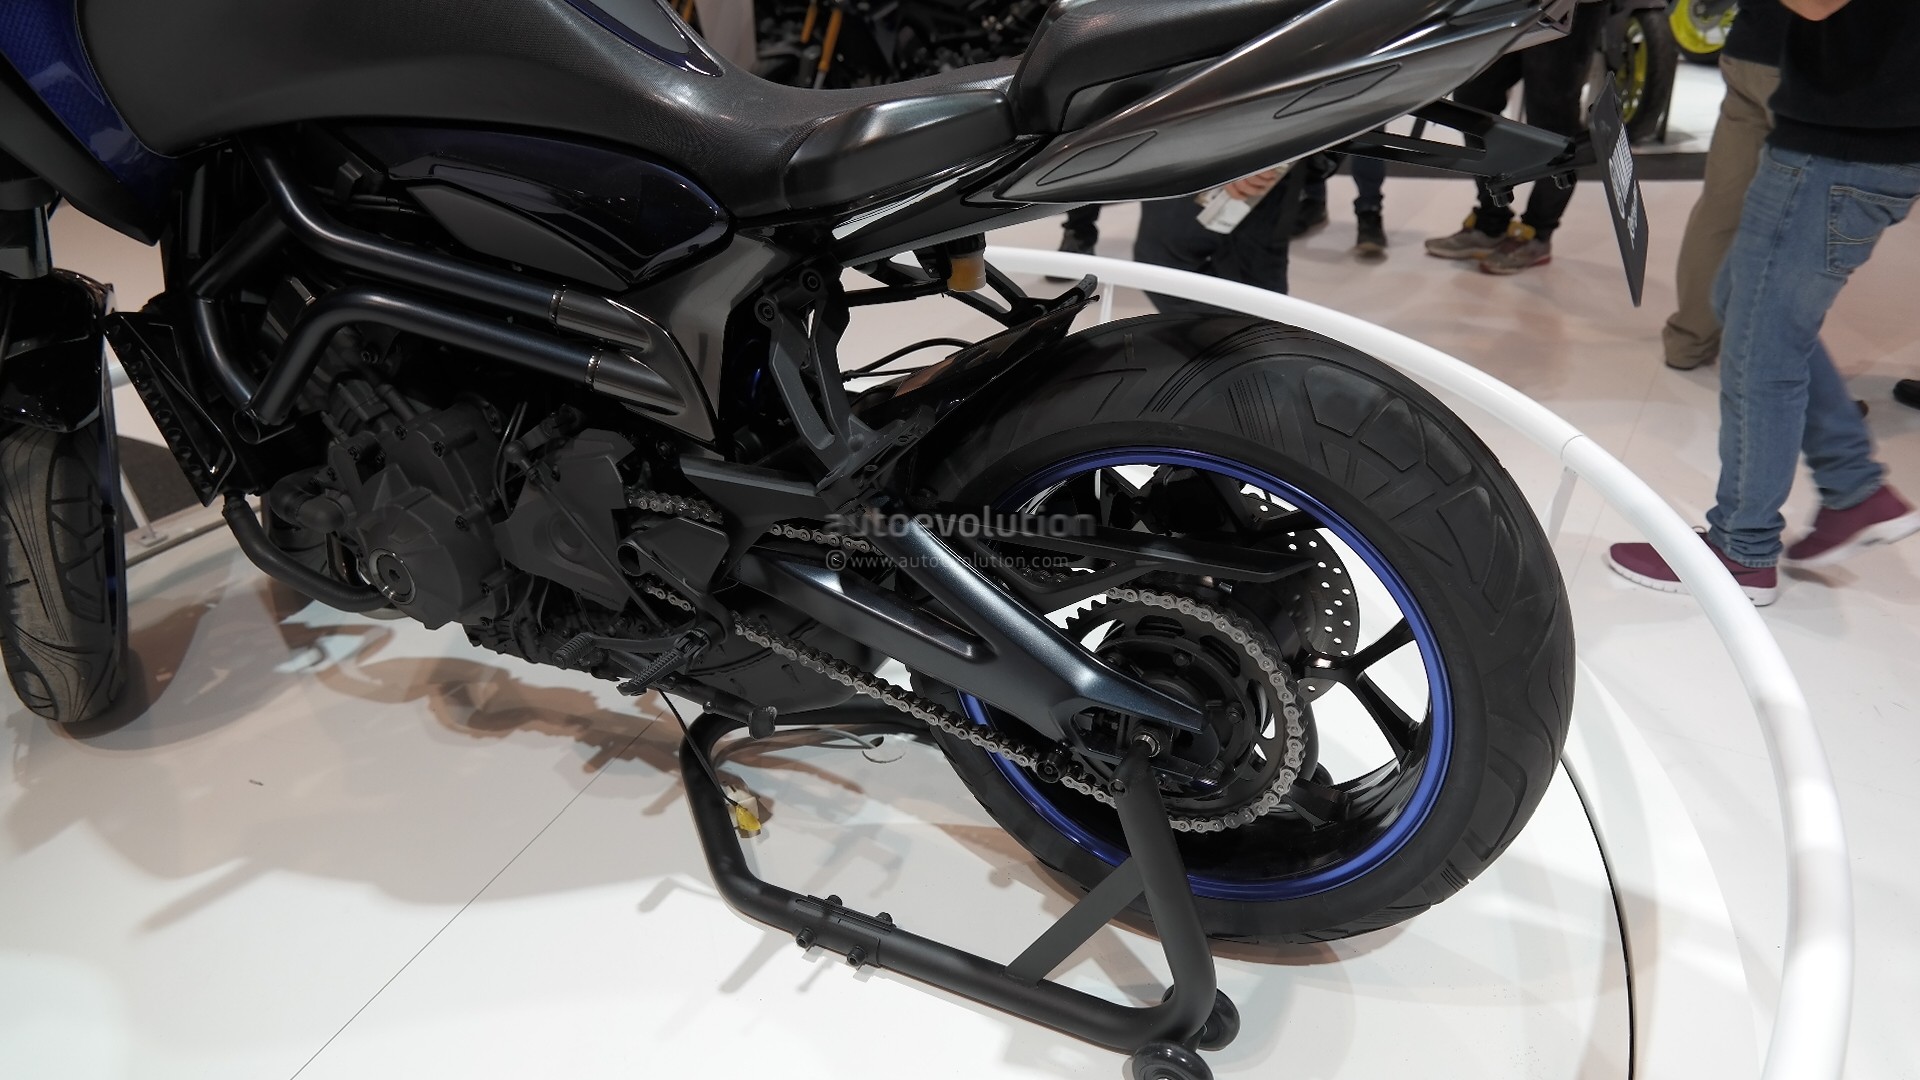 Yamaha Mwt 9 Leaning Trike Set To Enter Production Autoevolution